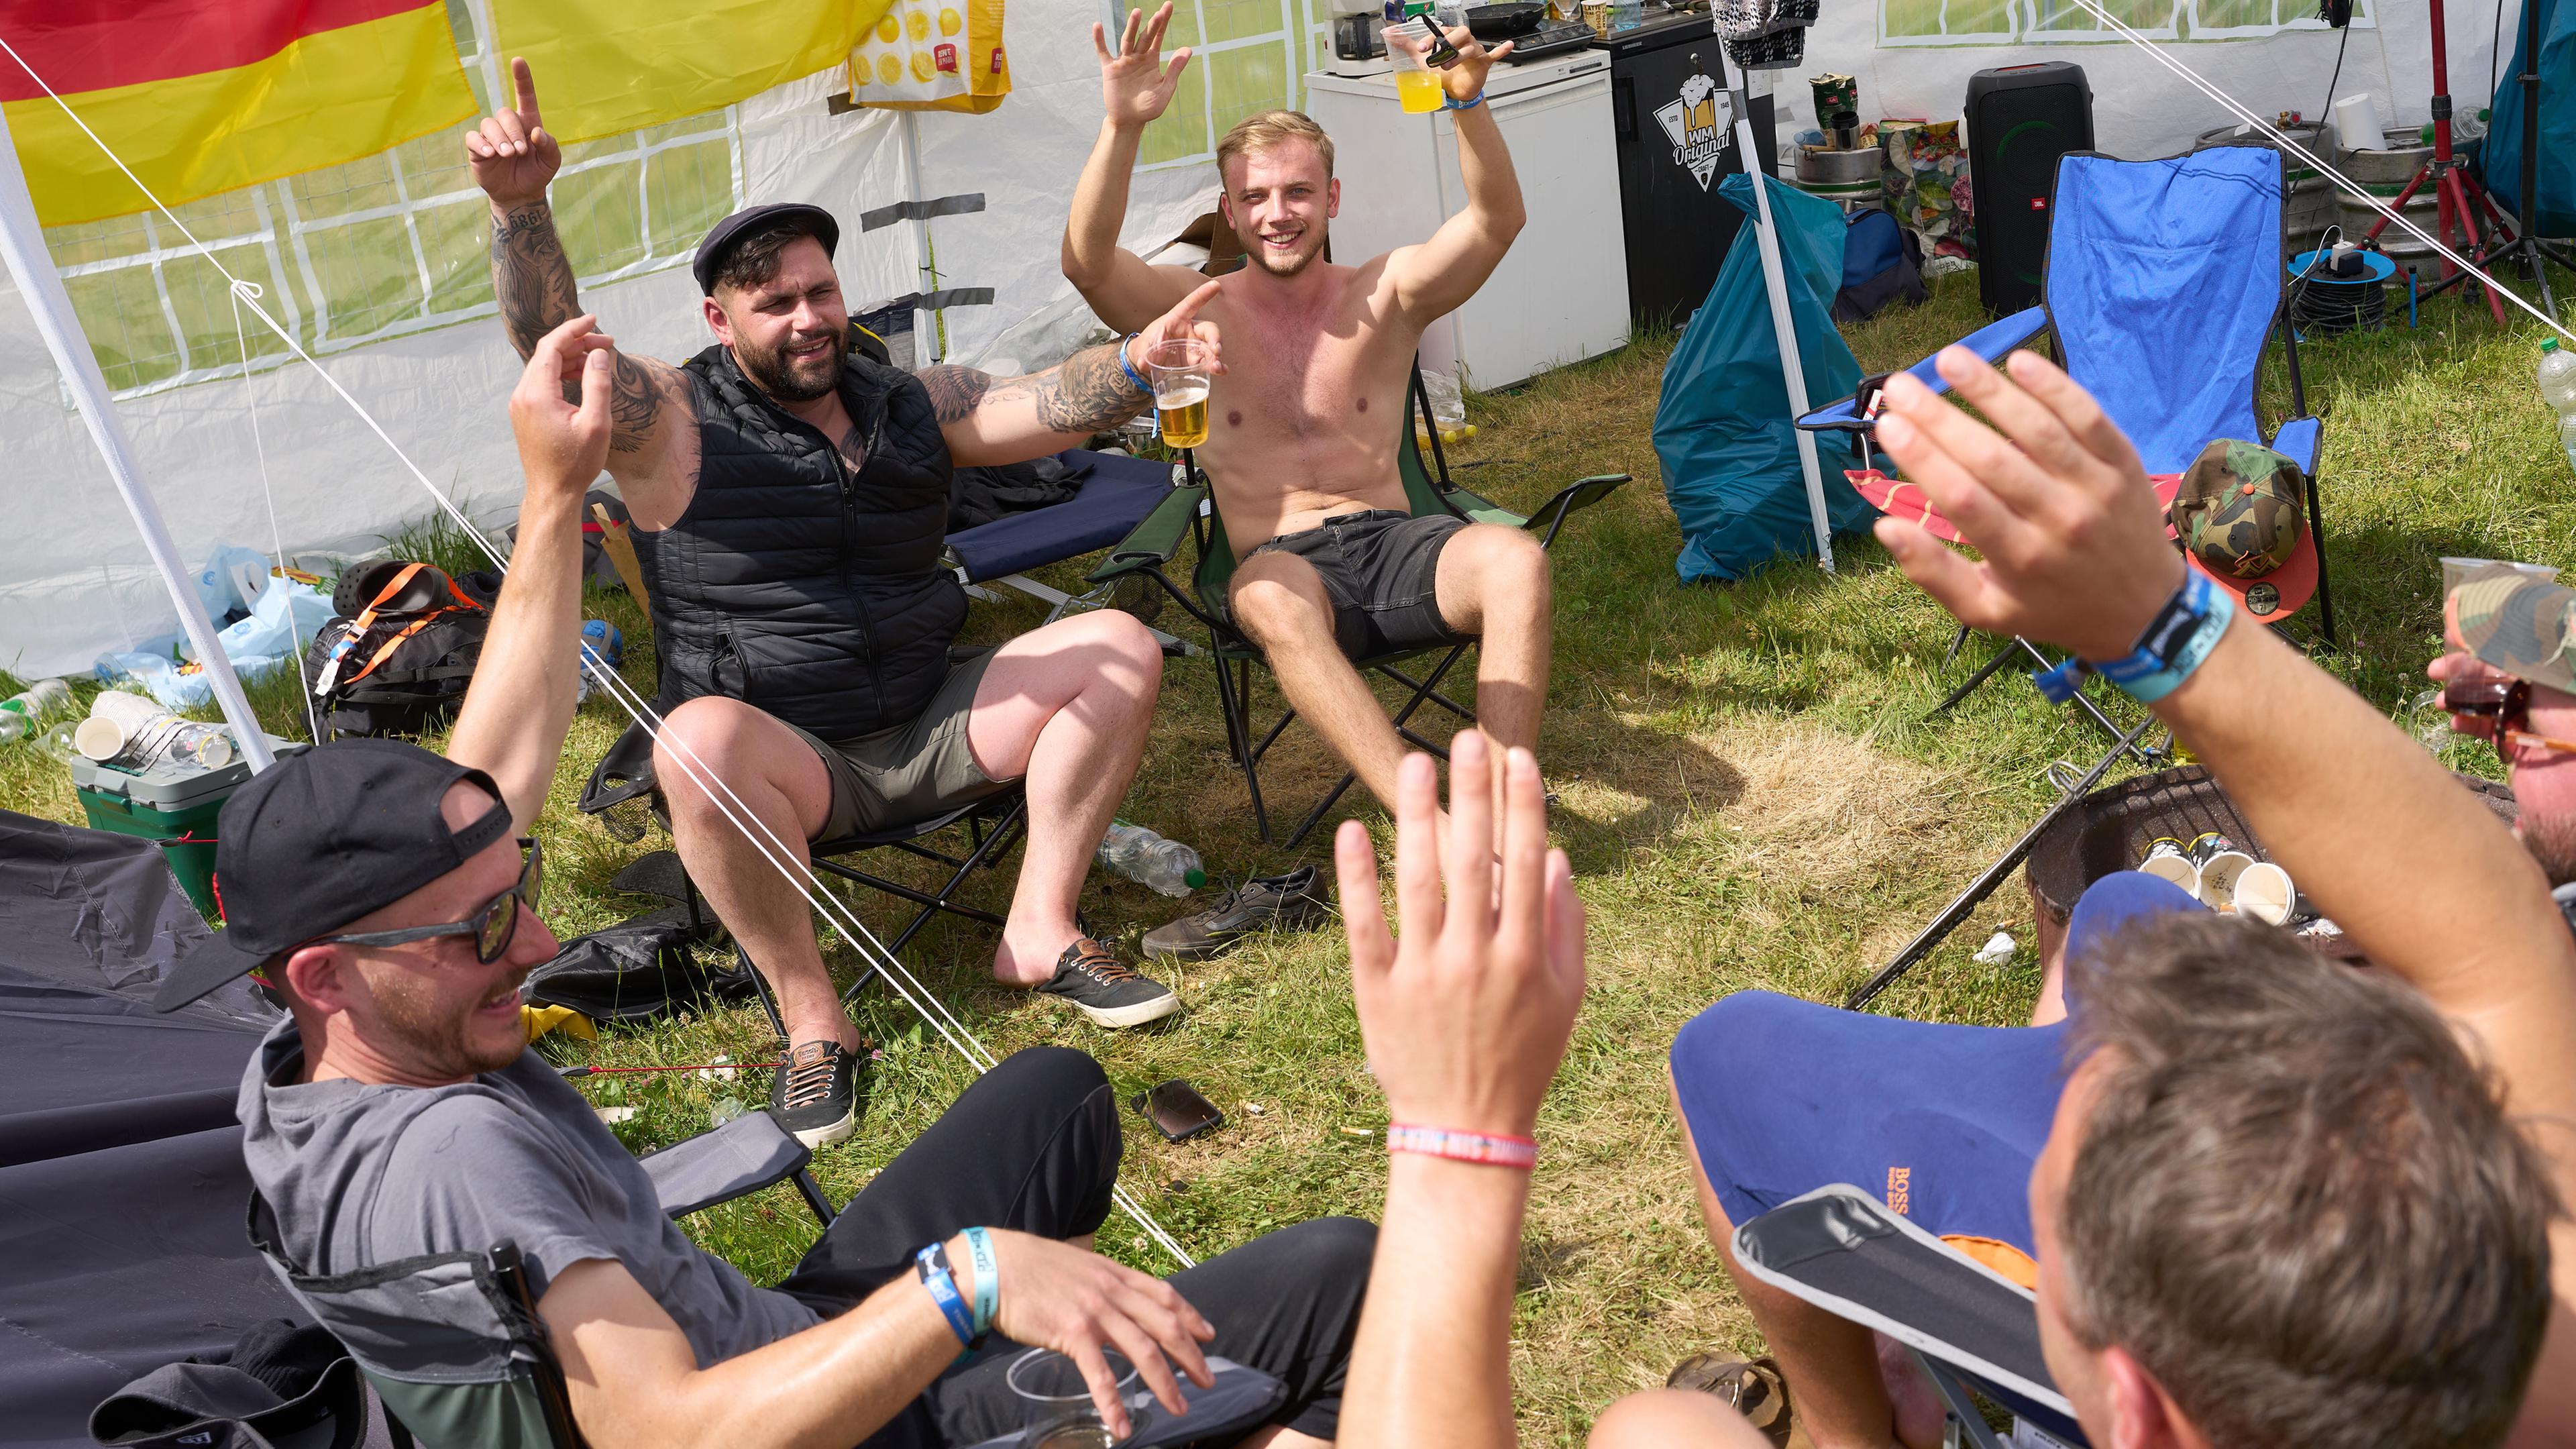 Rheinland-Pfalz, Nürburg: Festivalbesucher des Open-Air-Rockfestivals "Rock am Ring" aus Aachen feiern auf einer Campingfläche an der Eifelrennstrecke.